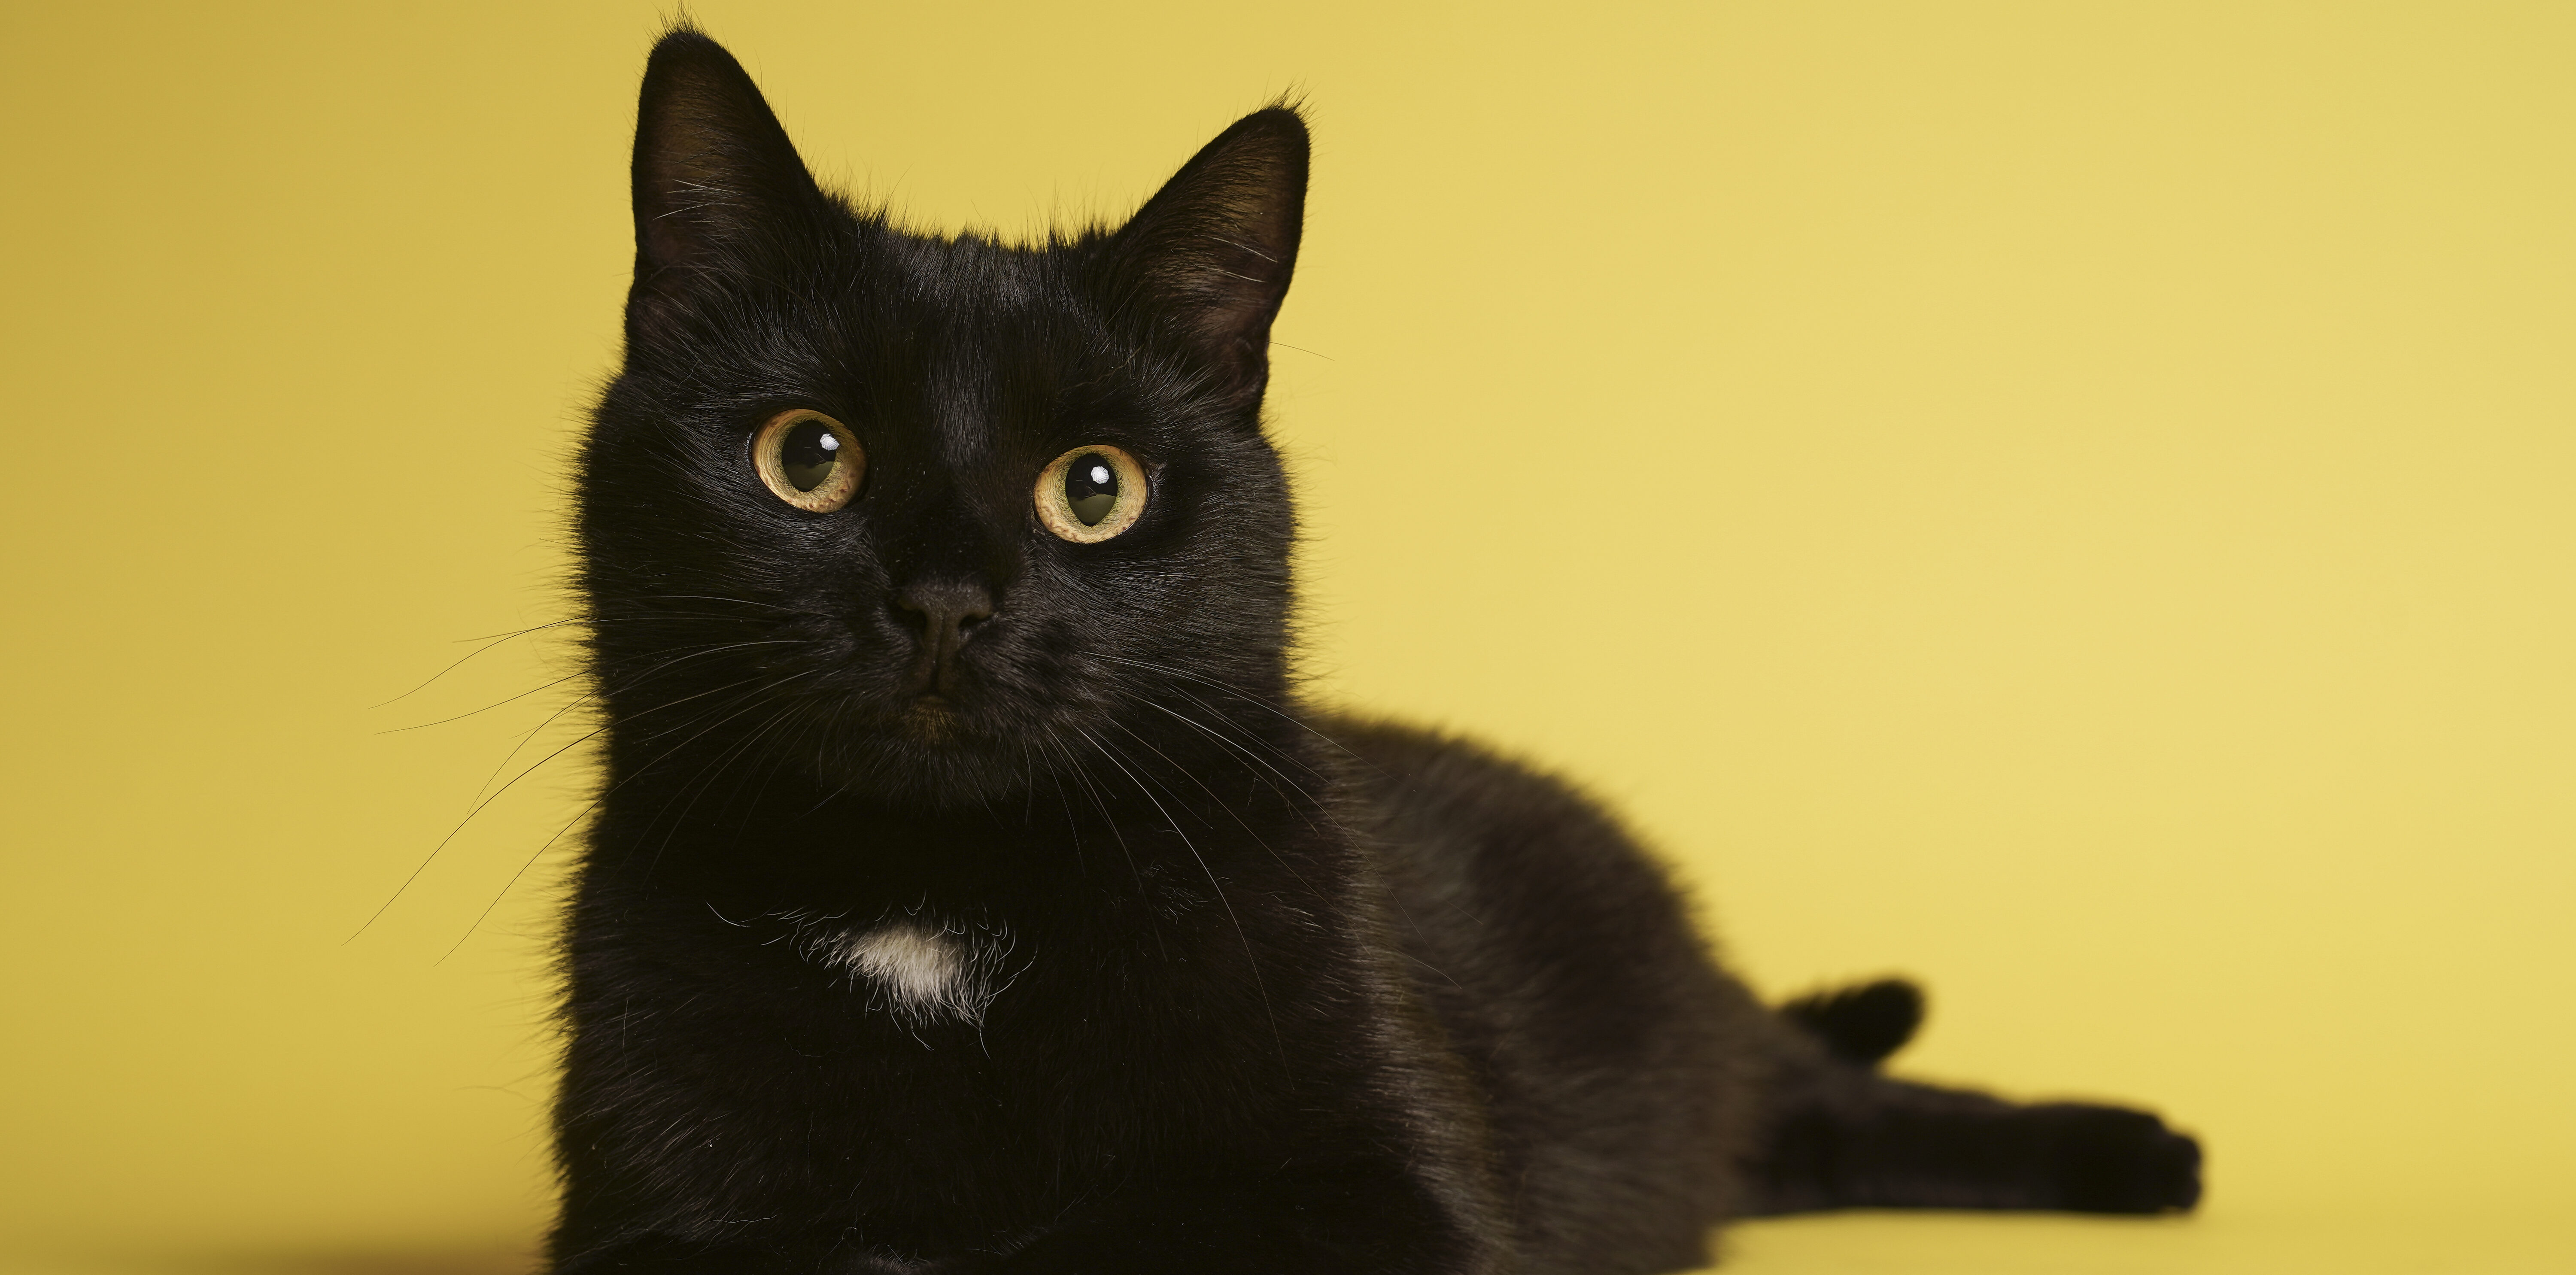 zacht transactie zanger Zwarte asielkatten krijgen hulp bij vinden van thuis: 'Brengen geen ongeluk'